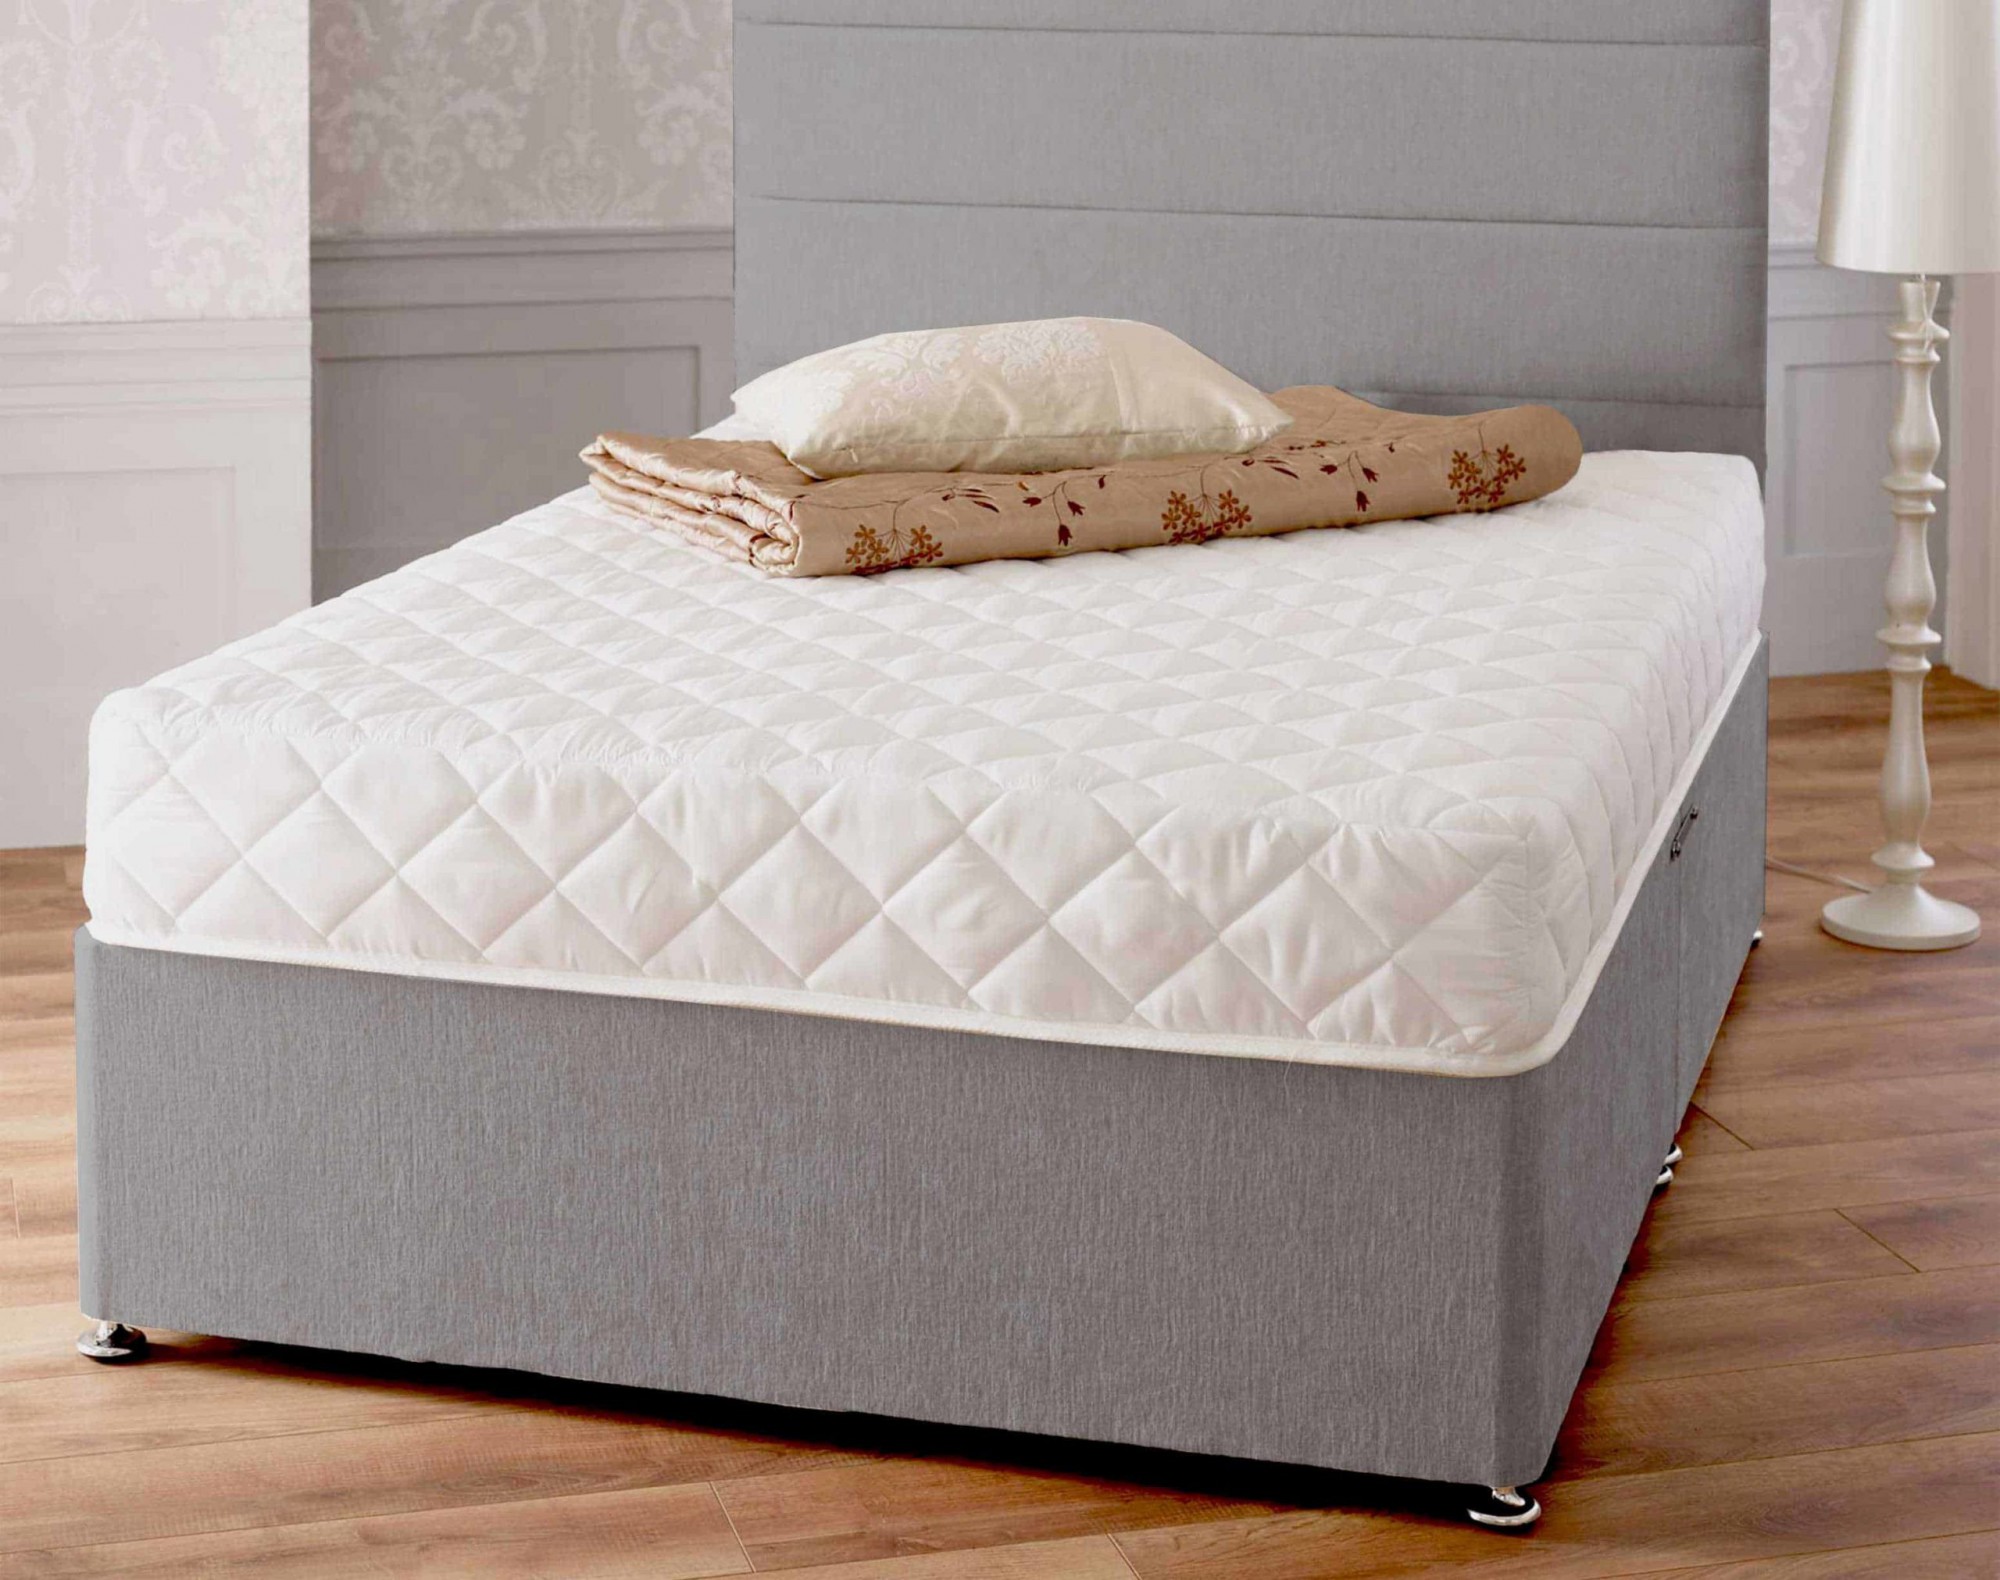 3d memory bonnell mattress review